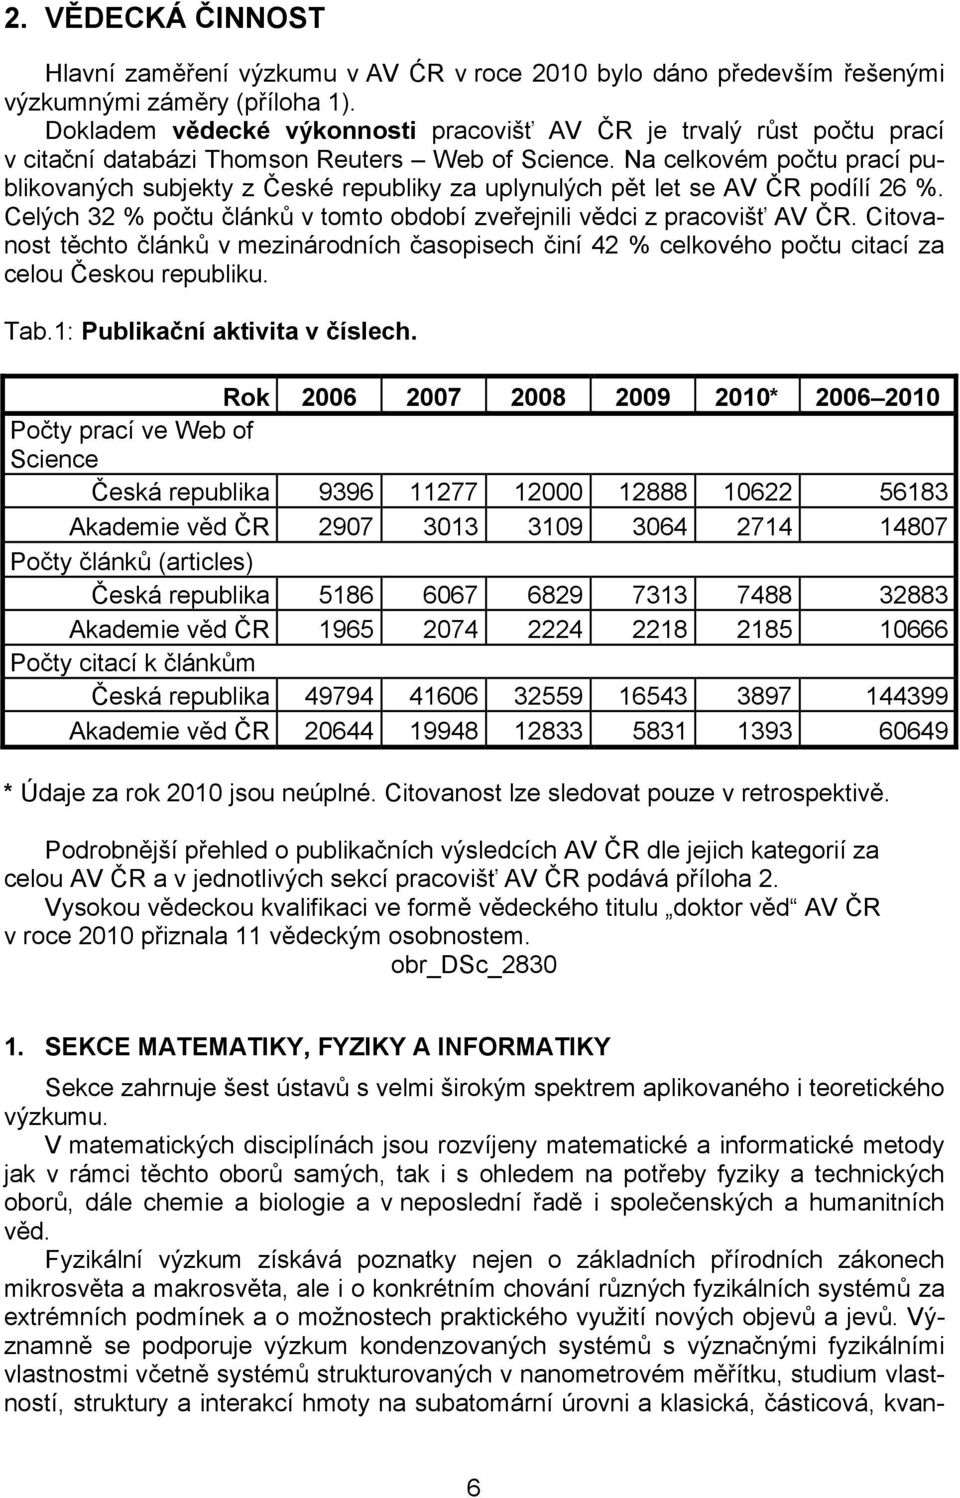 Na celkovém počtu prací publikovaných subjekty z České republiky za uplynulých pět let se AV ČR podílí 26 %. Celých 32 % počtu článků v tomto období zveřejnili vědci z pracovišť AV ČR.